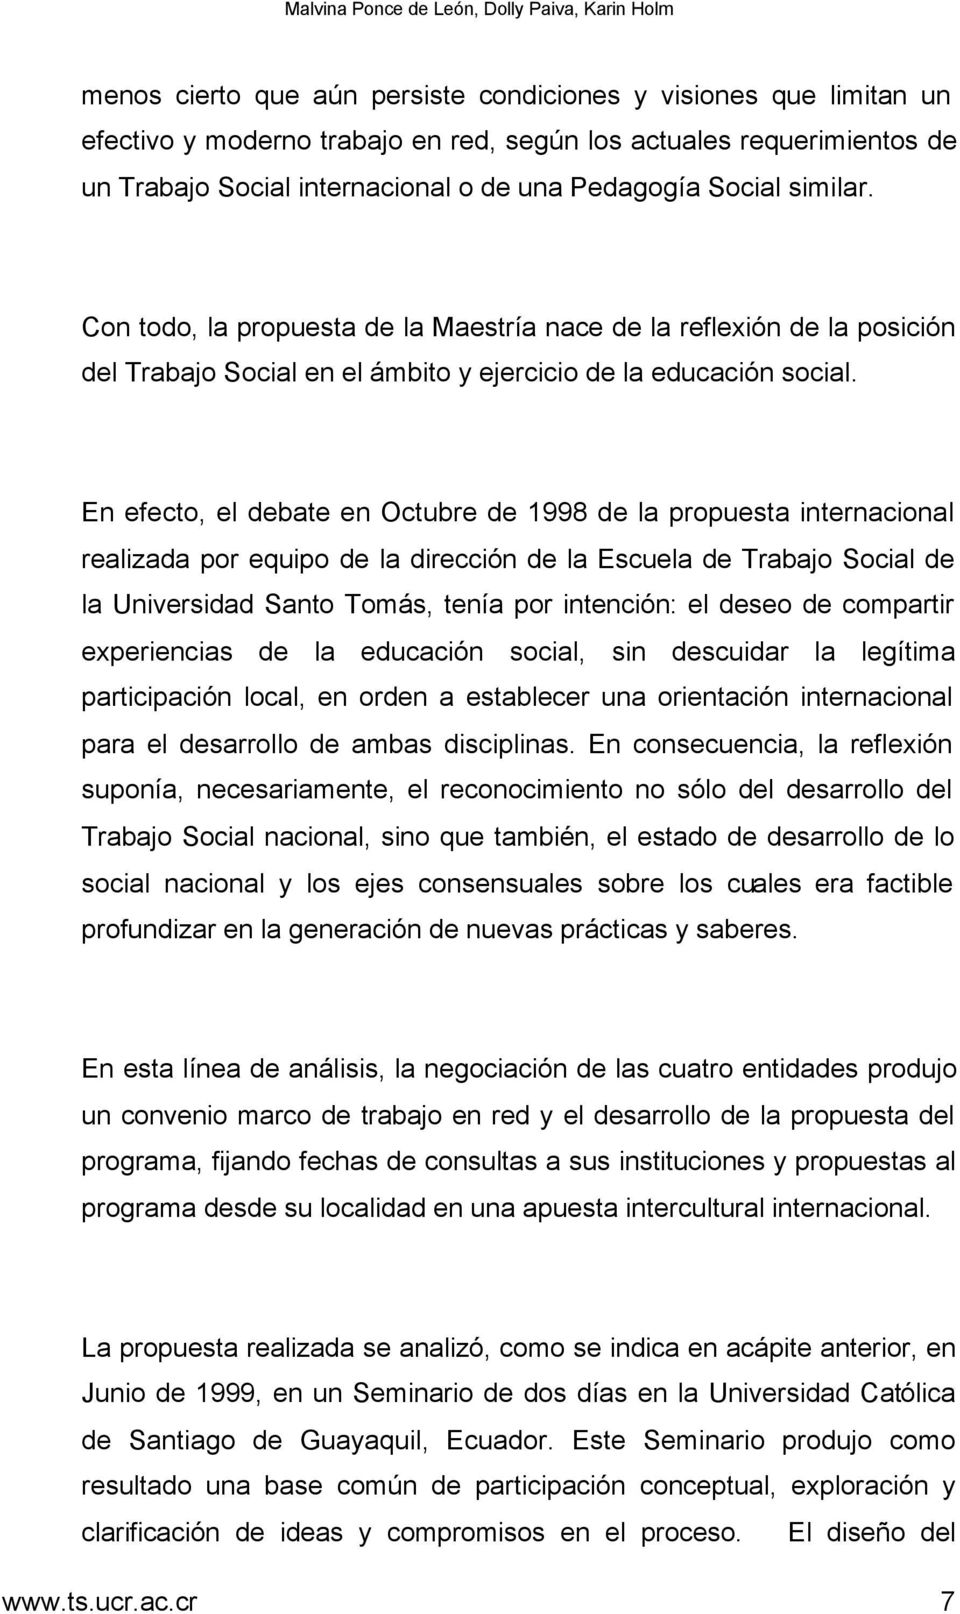 En efecto, el debate en Octubre de 1998 de la propuesta internacional realizada por equipo de la dirección de la Escuela de Trabajo Social de la Universidad Santo Tomás, tenía por intención: el deseo